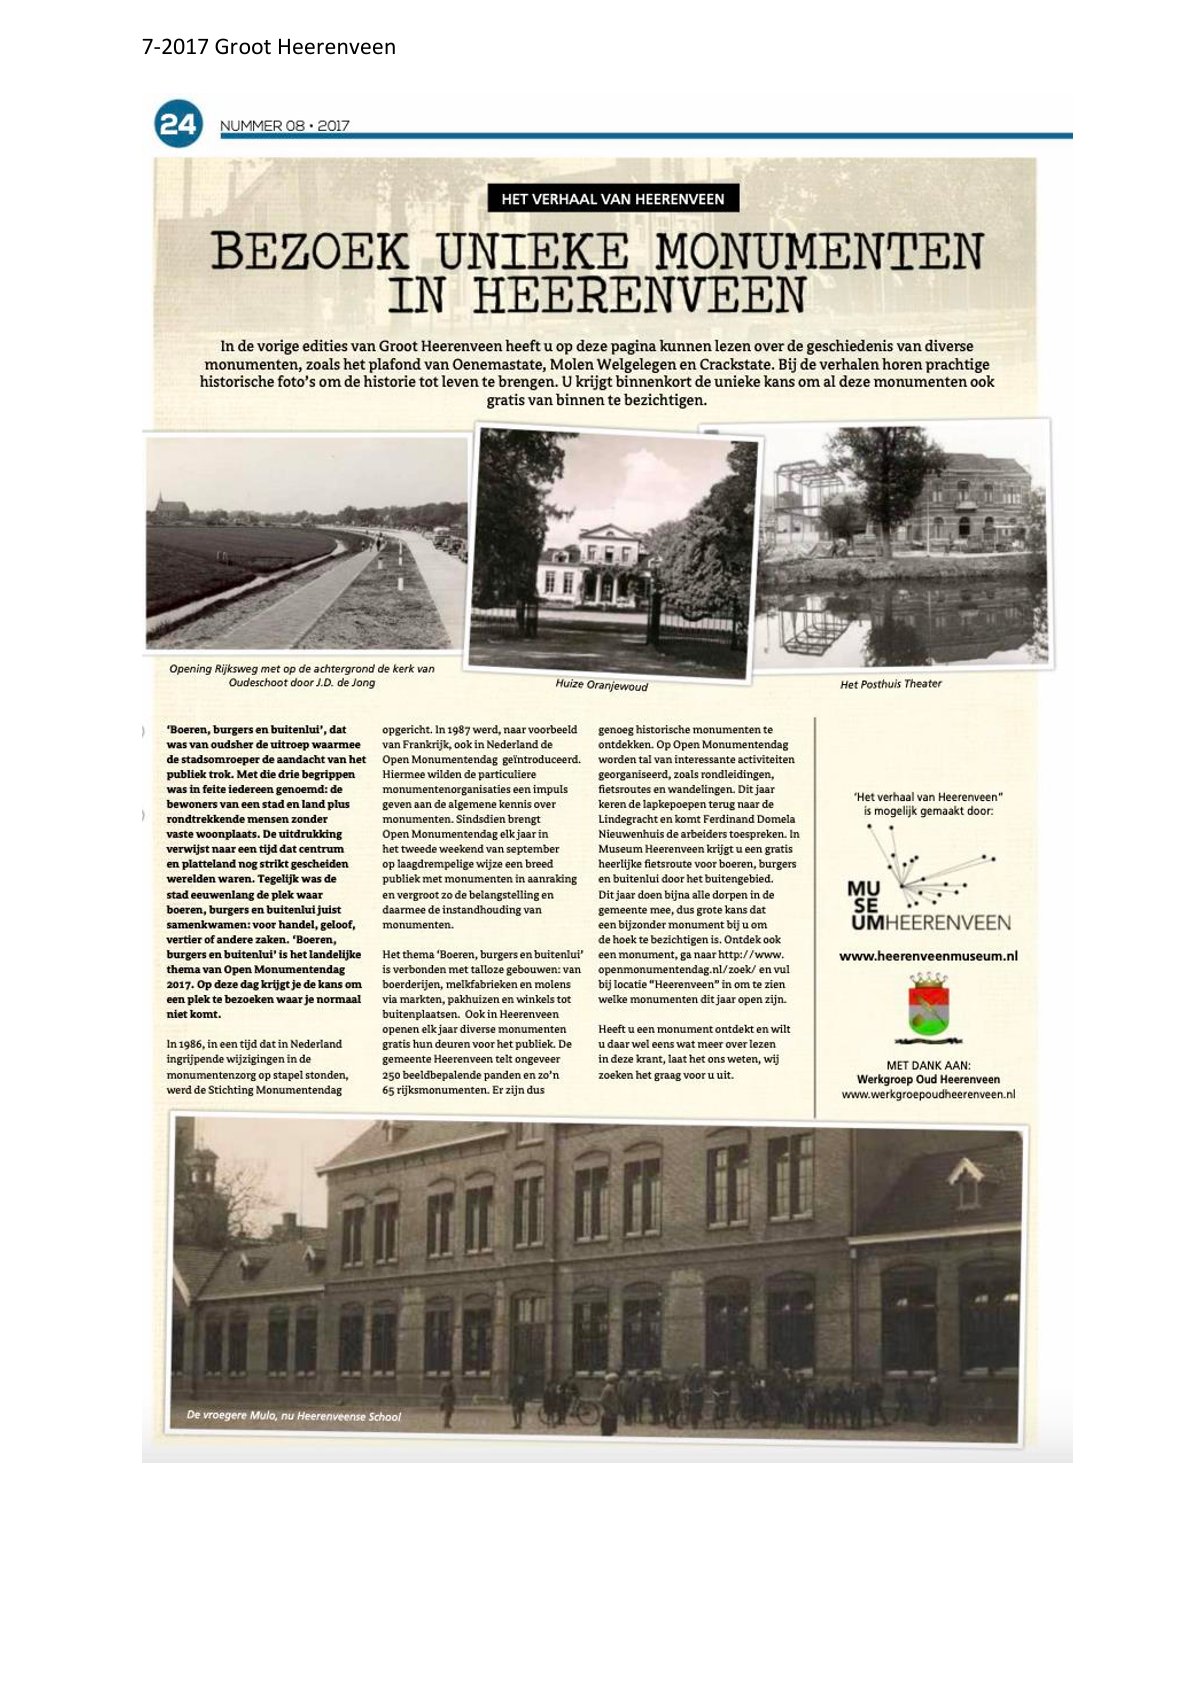 Bezoek unieke monumenten in Heerenveen